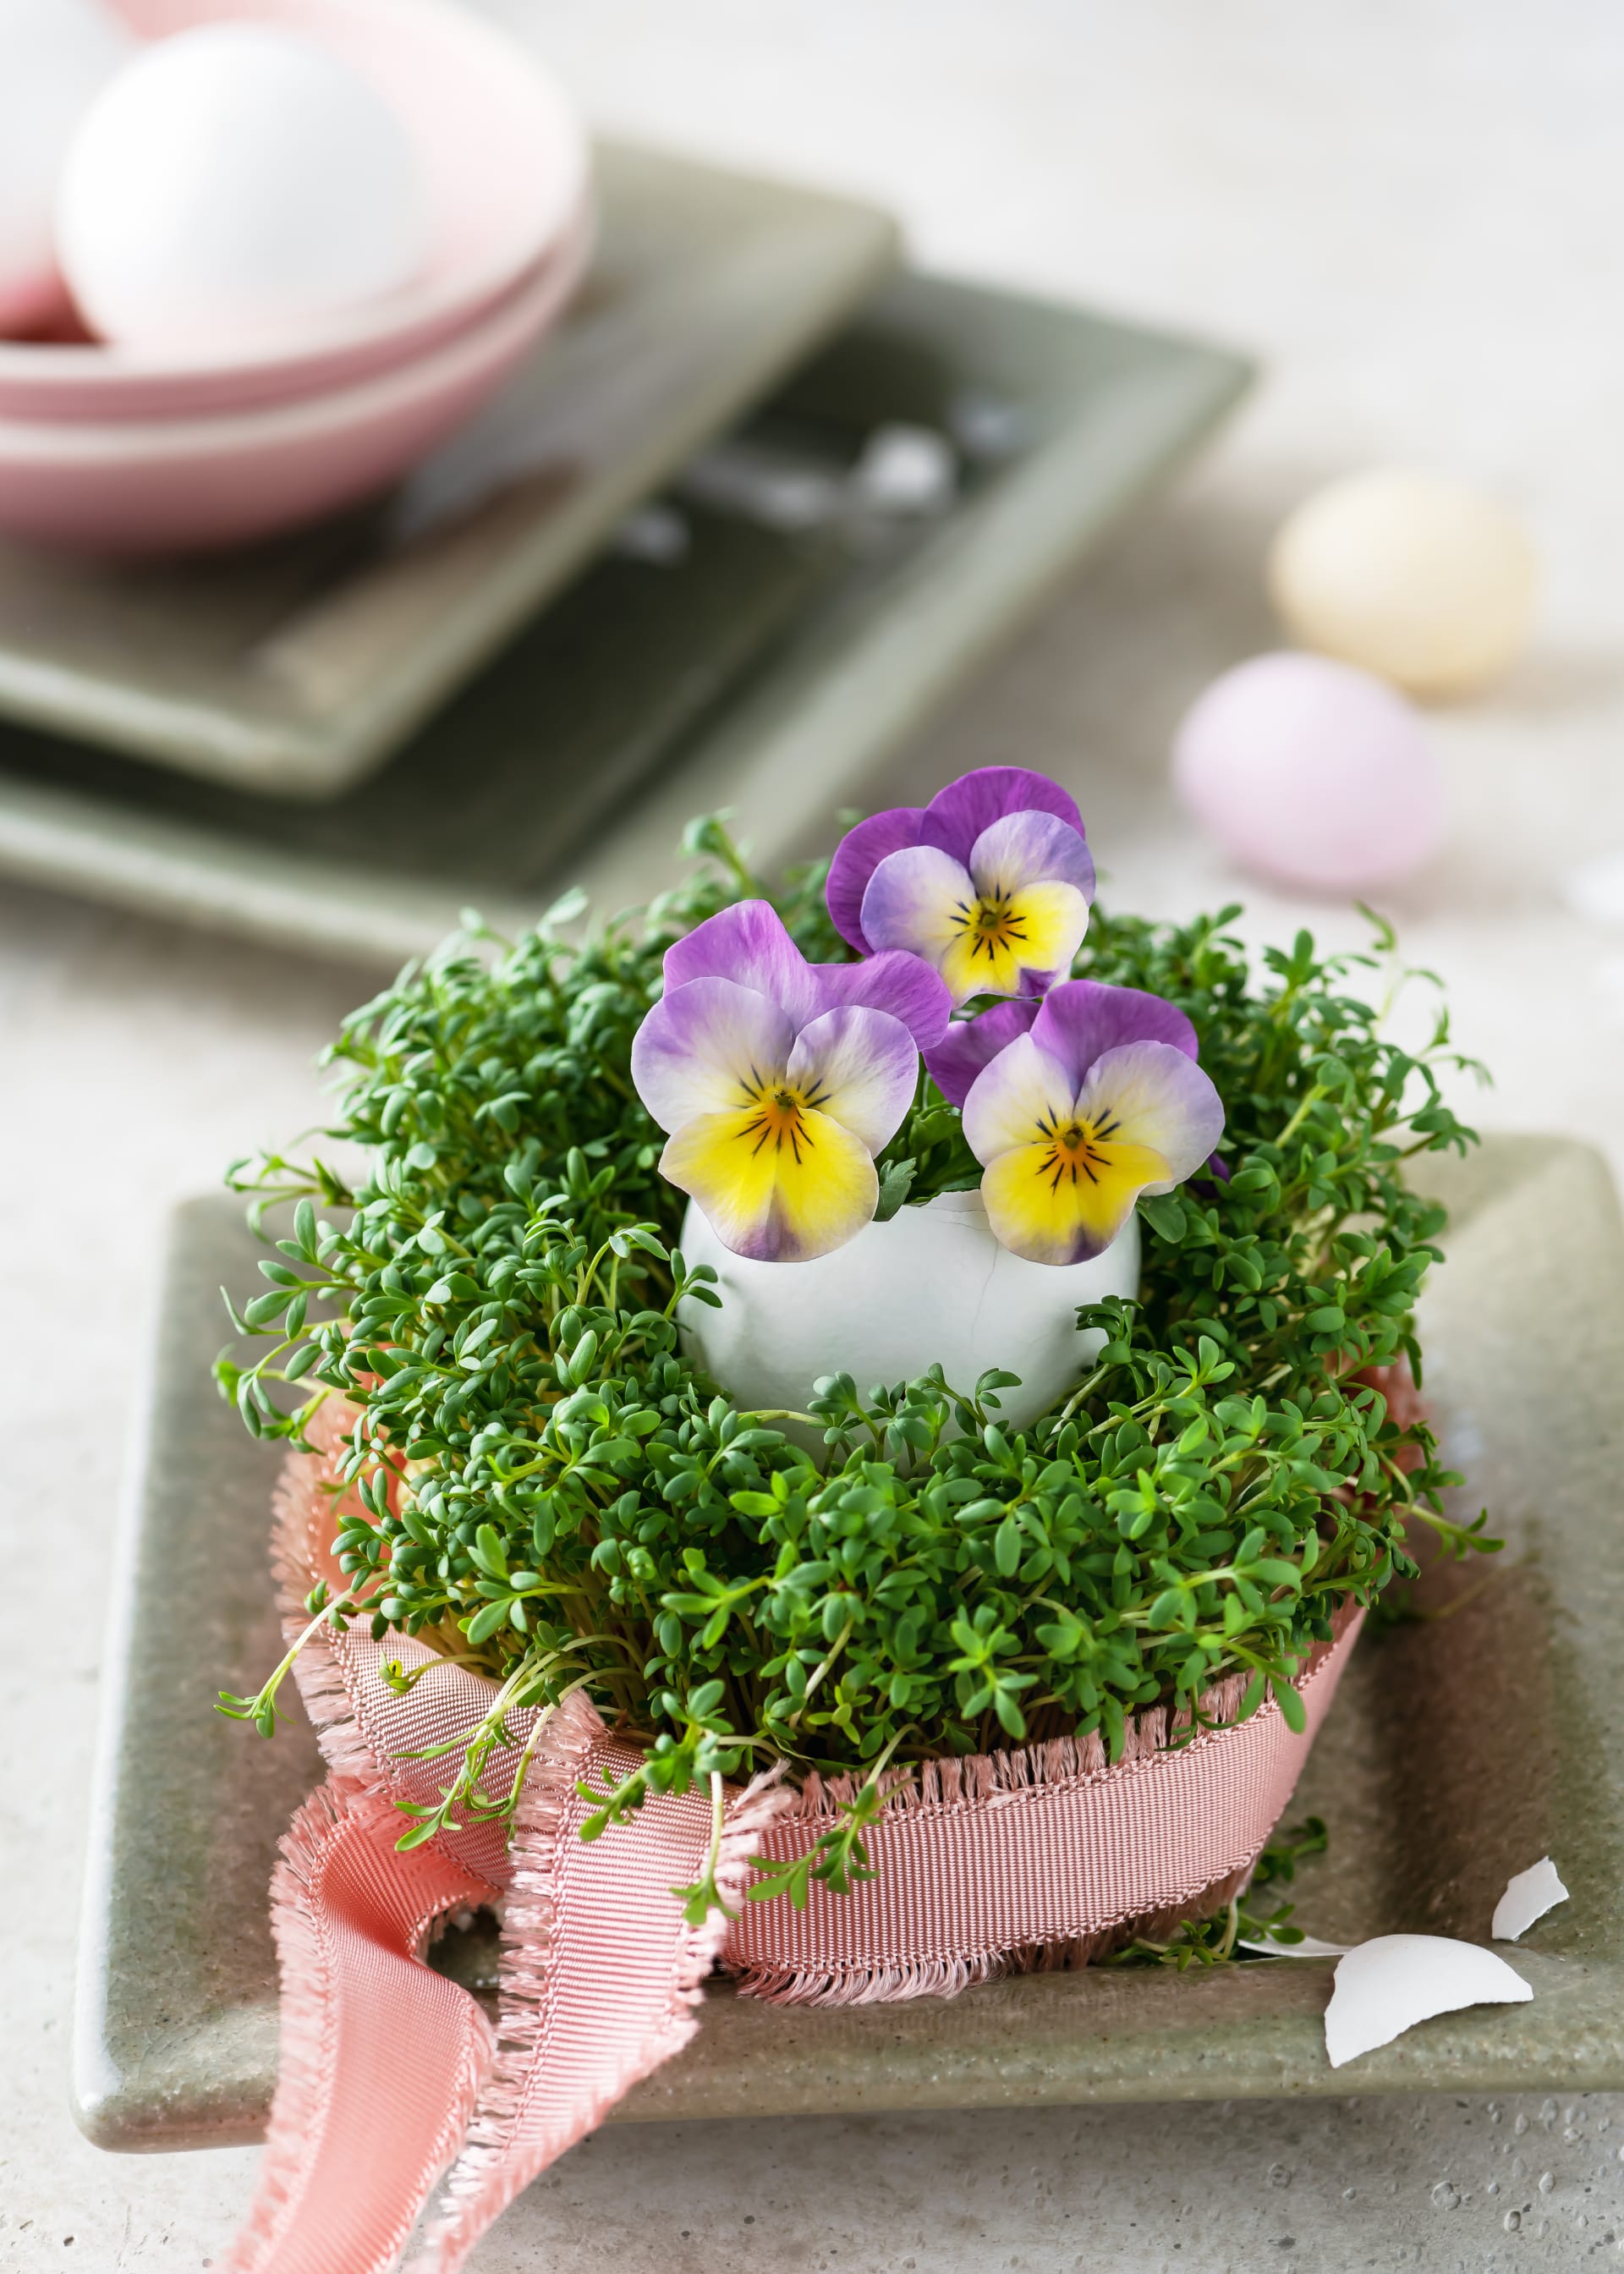 Čerstvě narašená řeřicha a jedlé květy macešek na velikonočním stole